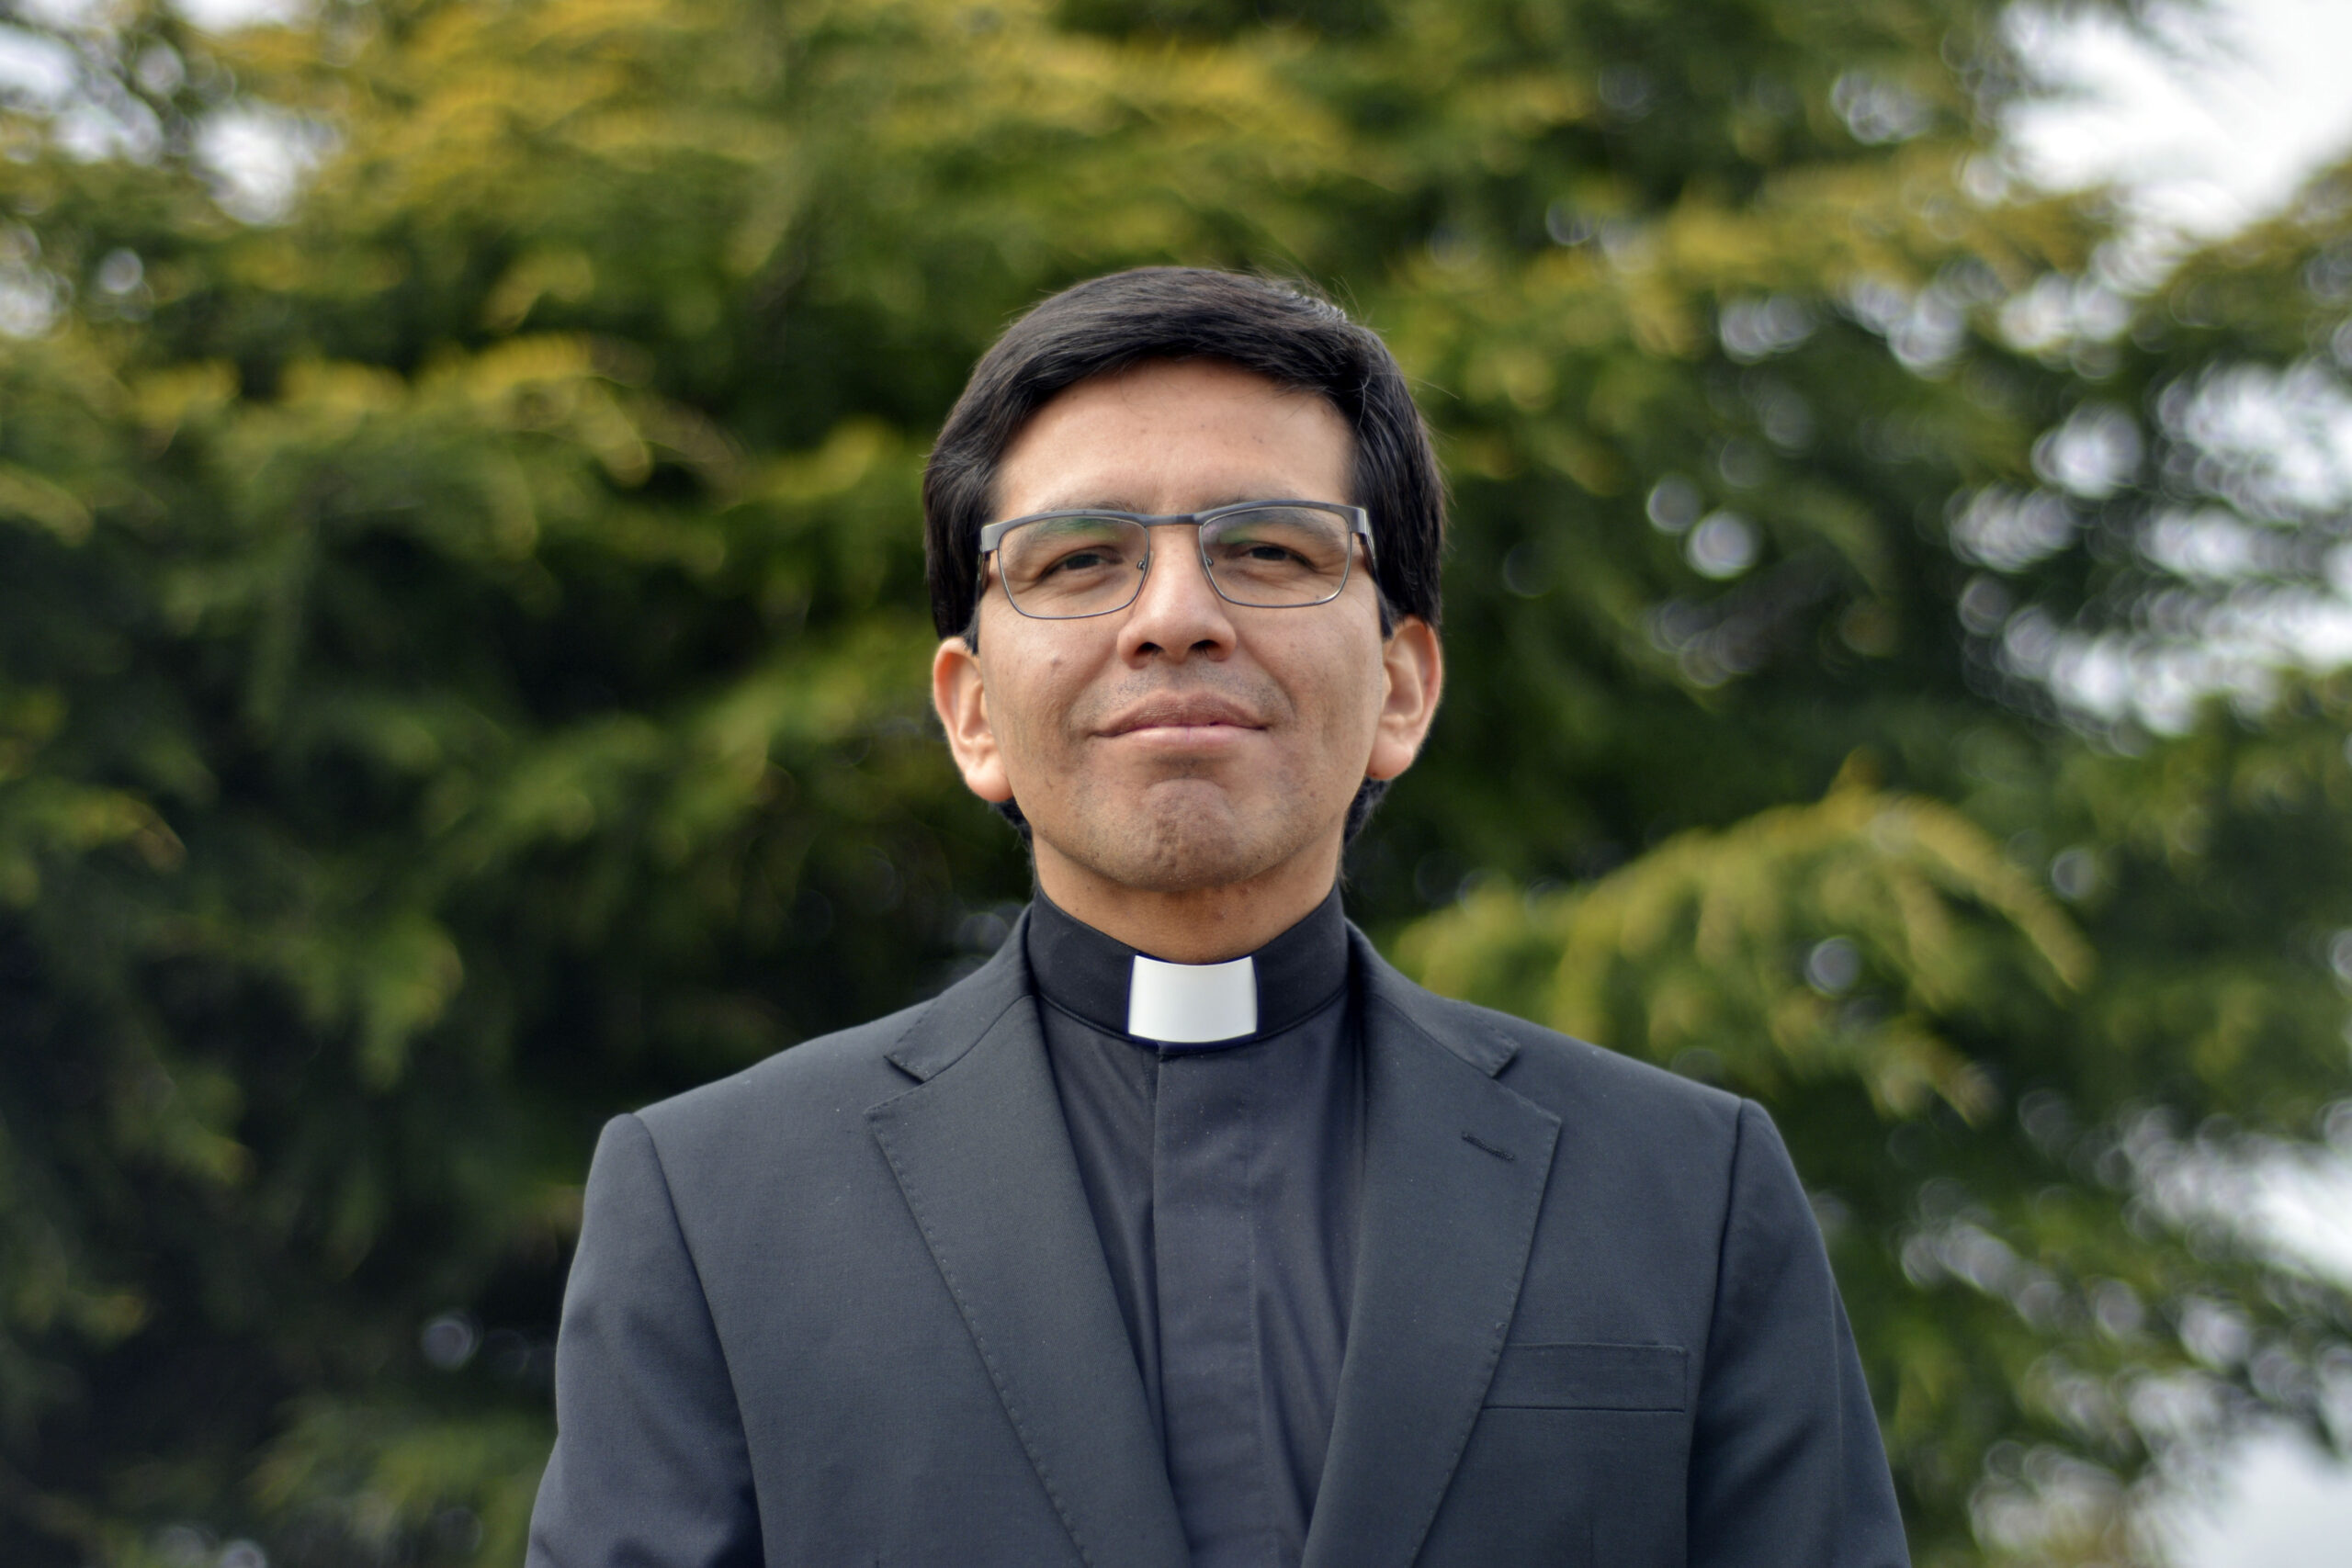 José Luis Chinguel Beltrán priest